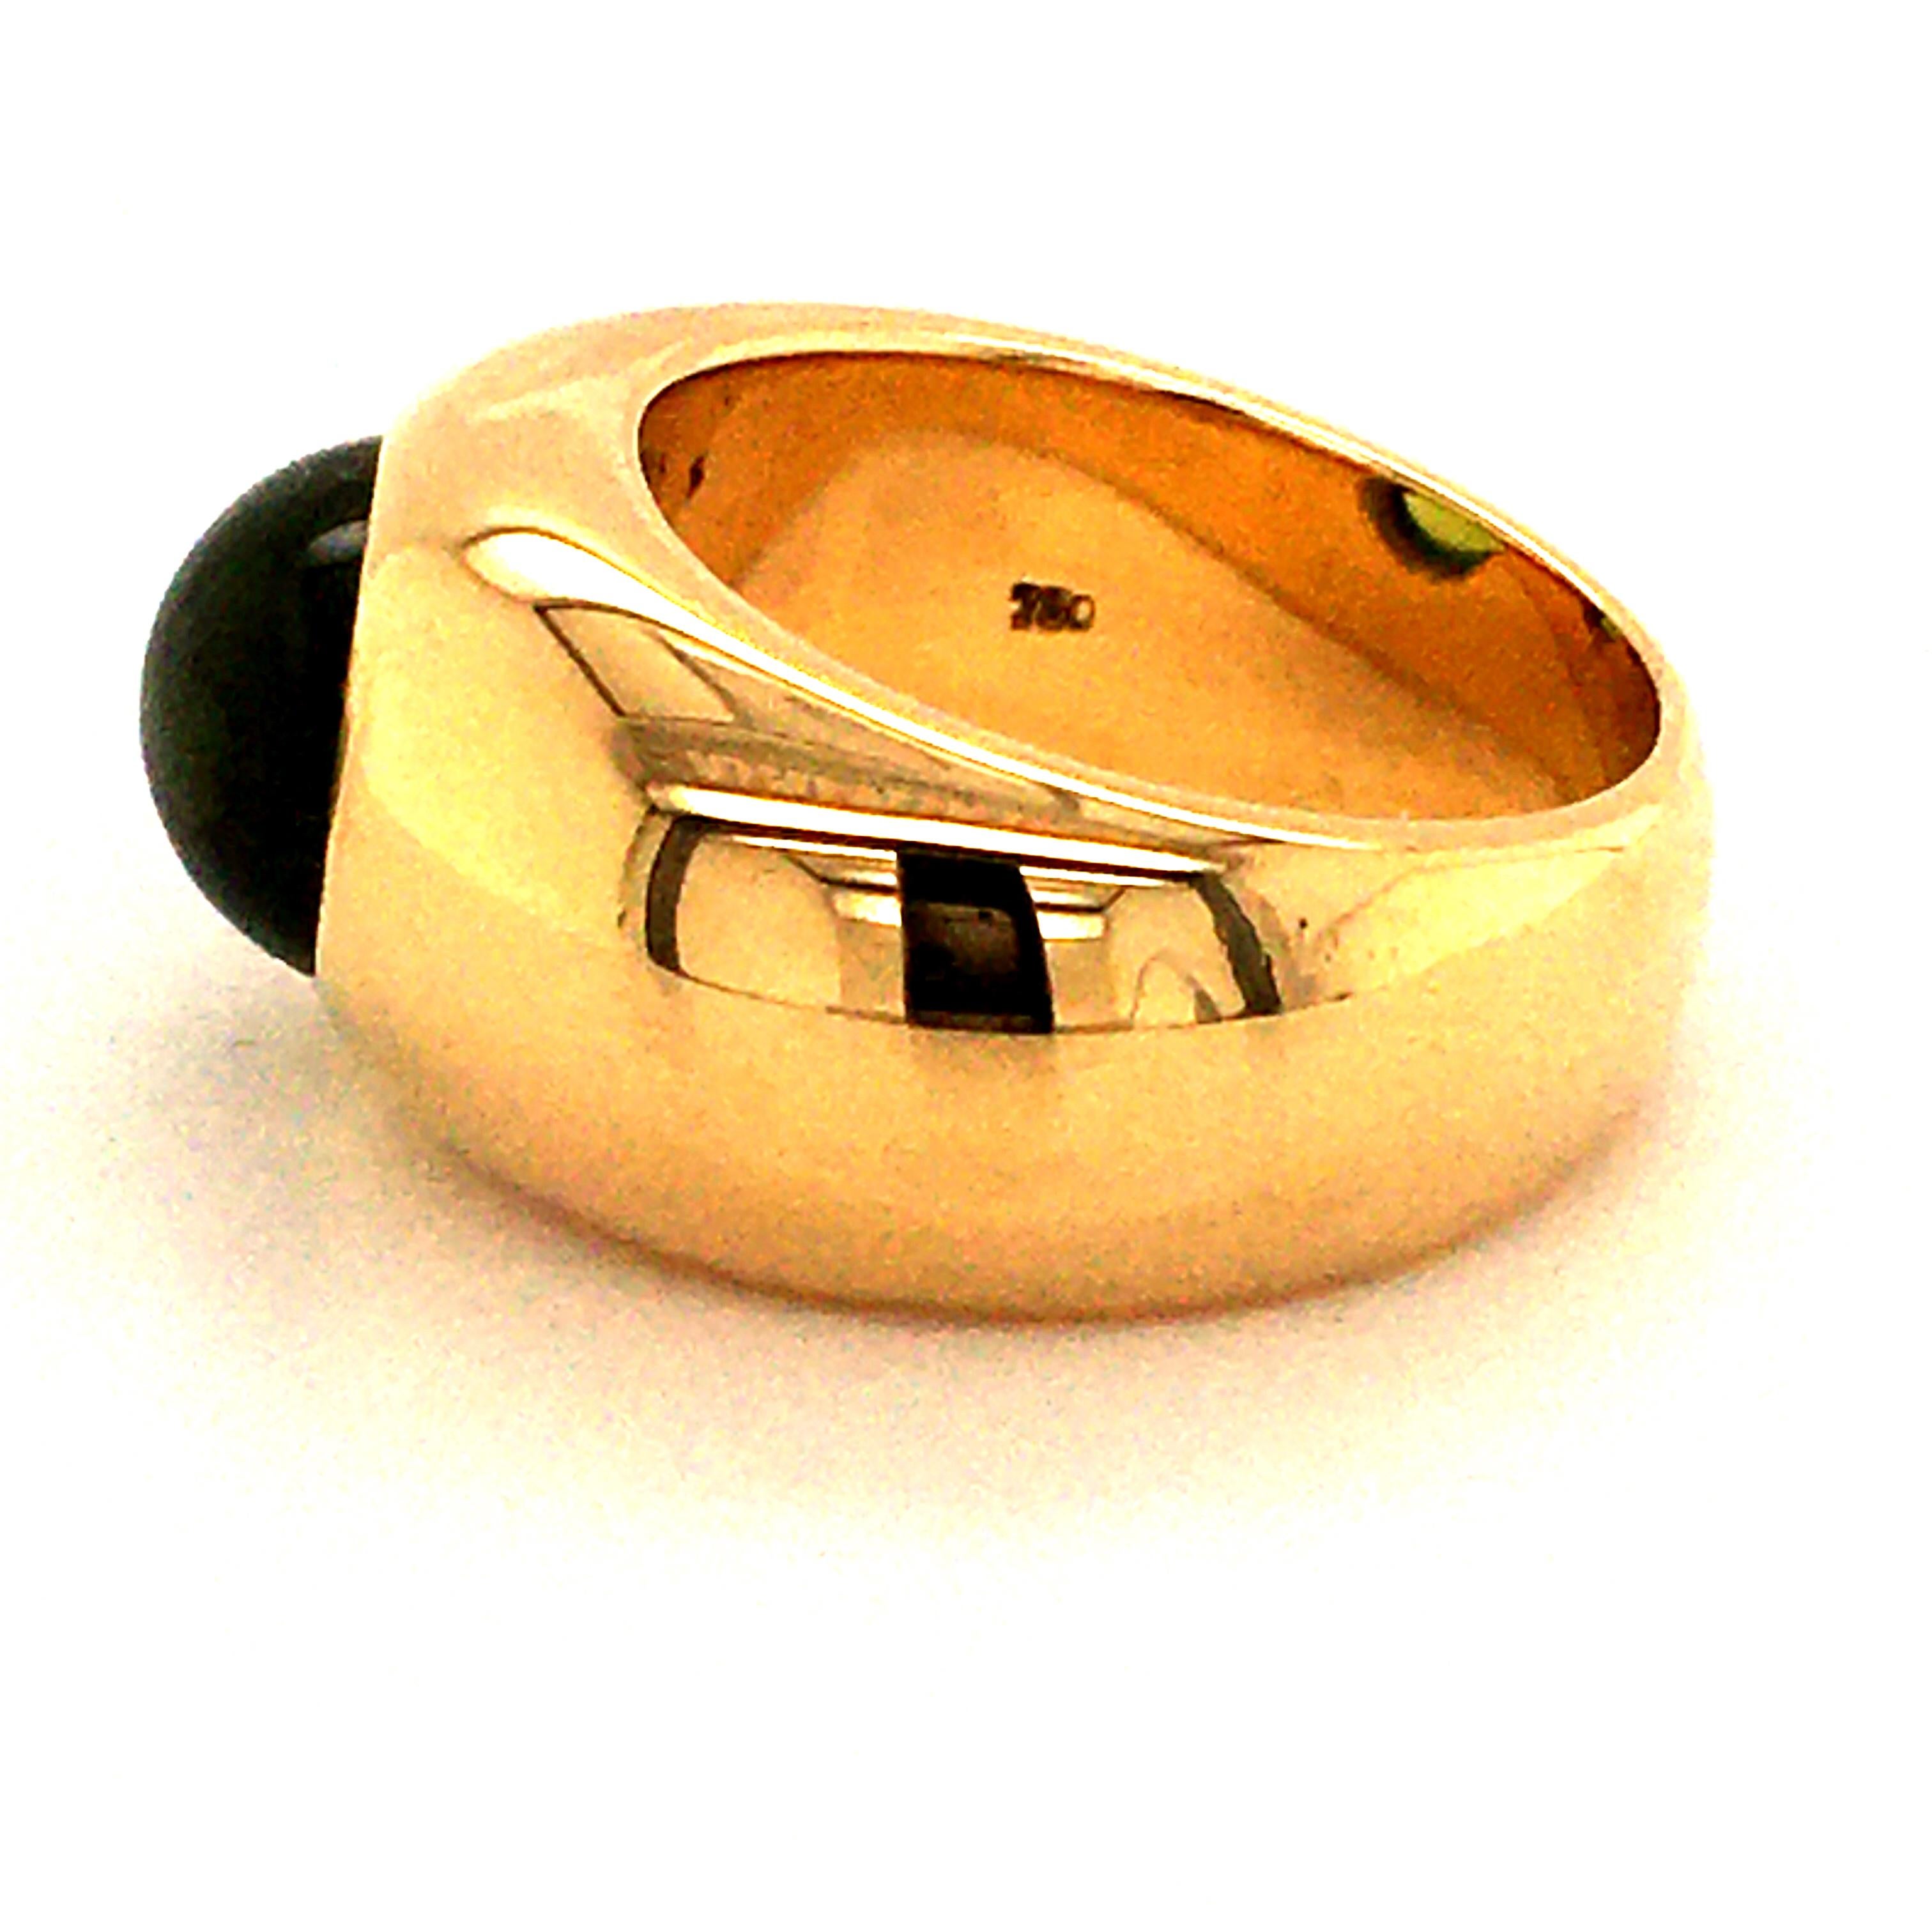 Oval Cut Yellow Gold Peridot Ring by Bucherer